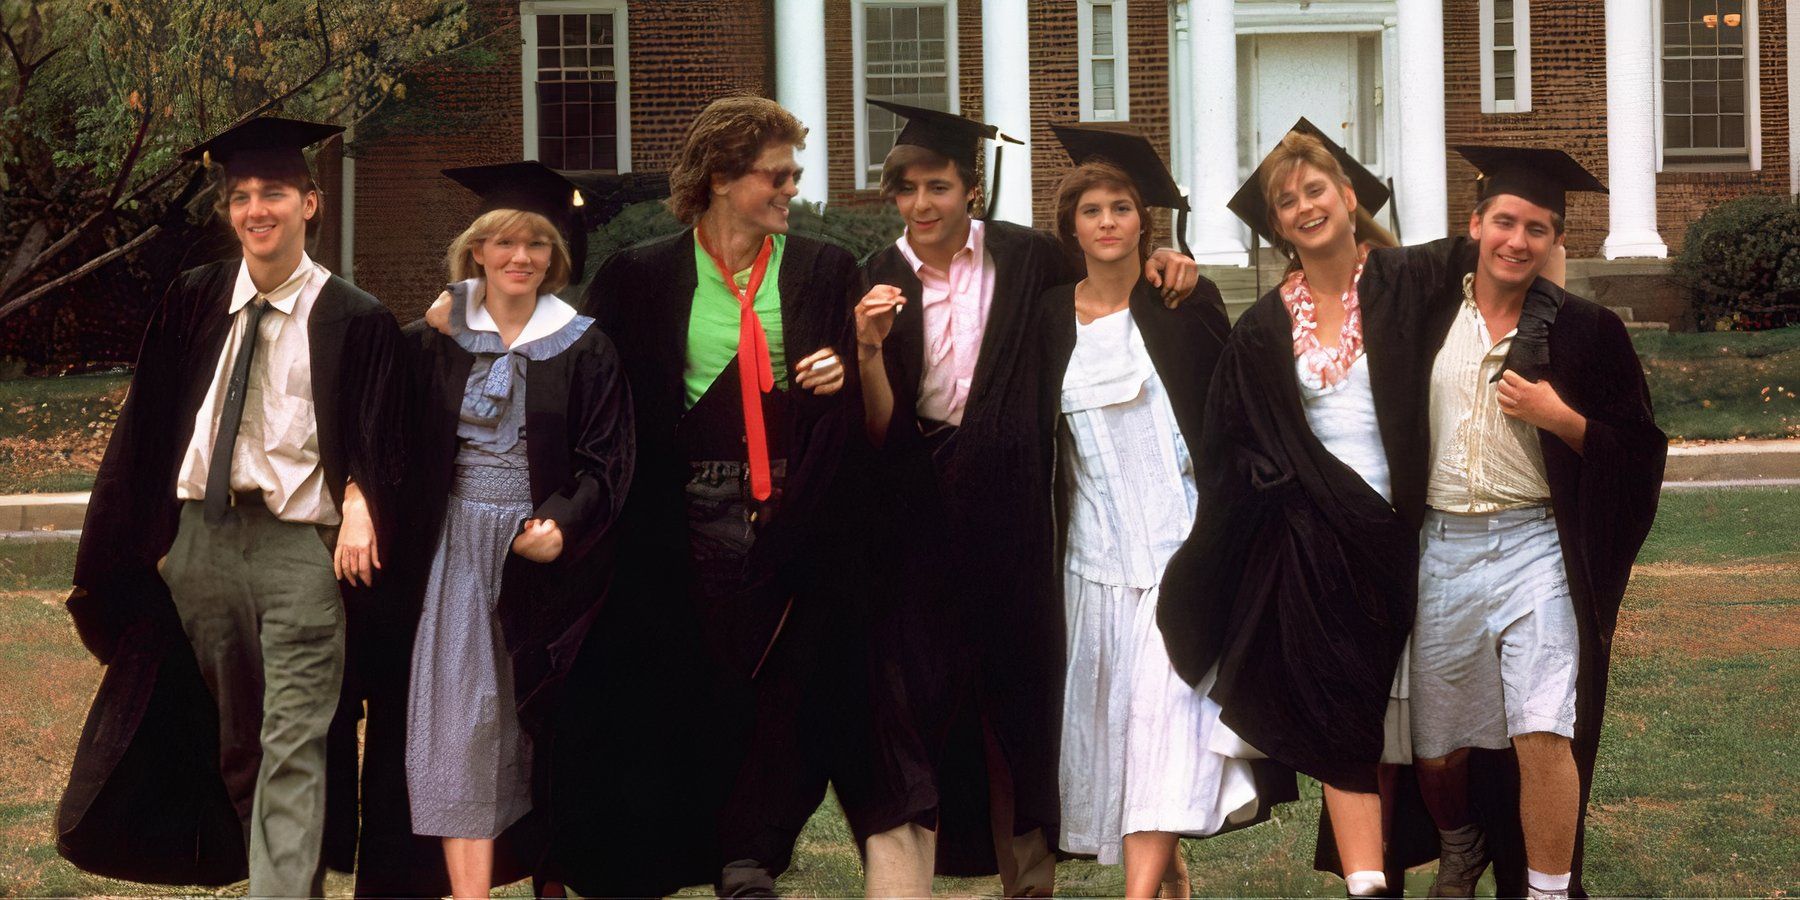 Captura de tela dos sete personagens principais do filme St Elmo's Fire saindo de um prédio universitário usando bonés e vestidos de formatura.